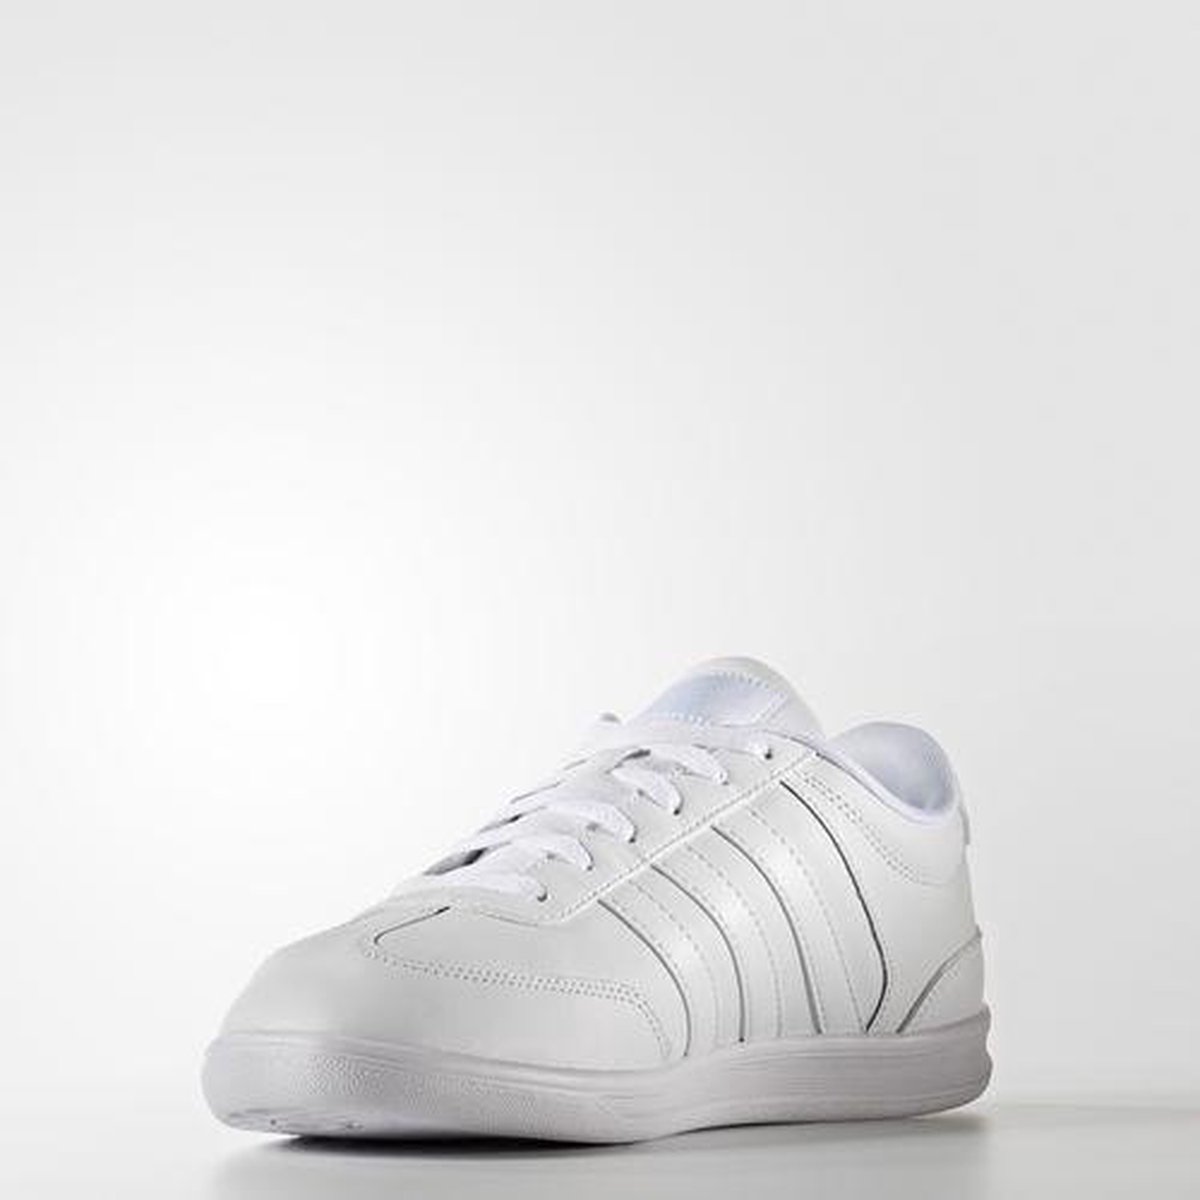 adidas NEO - Sneakers - Heren - Wit - Maat 42 2/3 | bol.com